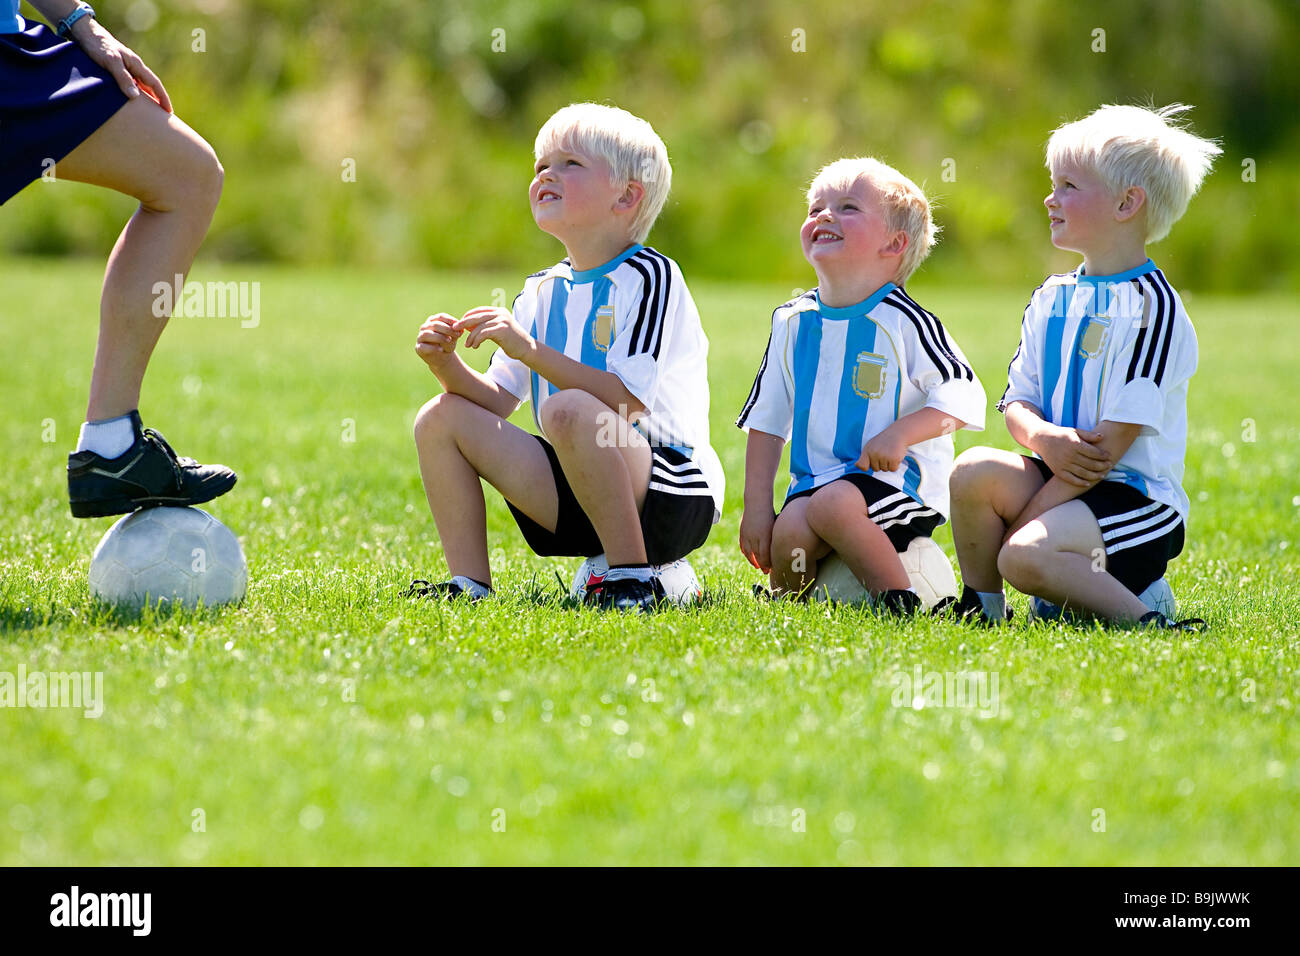 Une mère son coaching trois petits garçons au cours d'entraînement de soccer. Banque D'Images